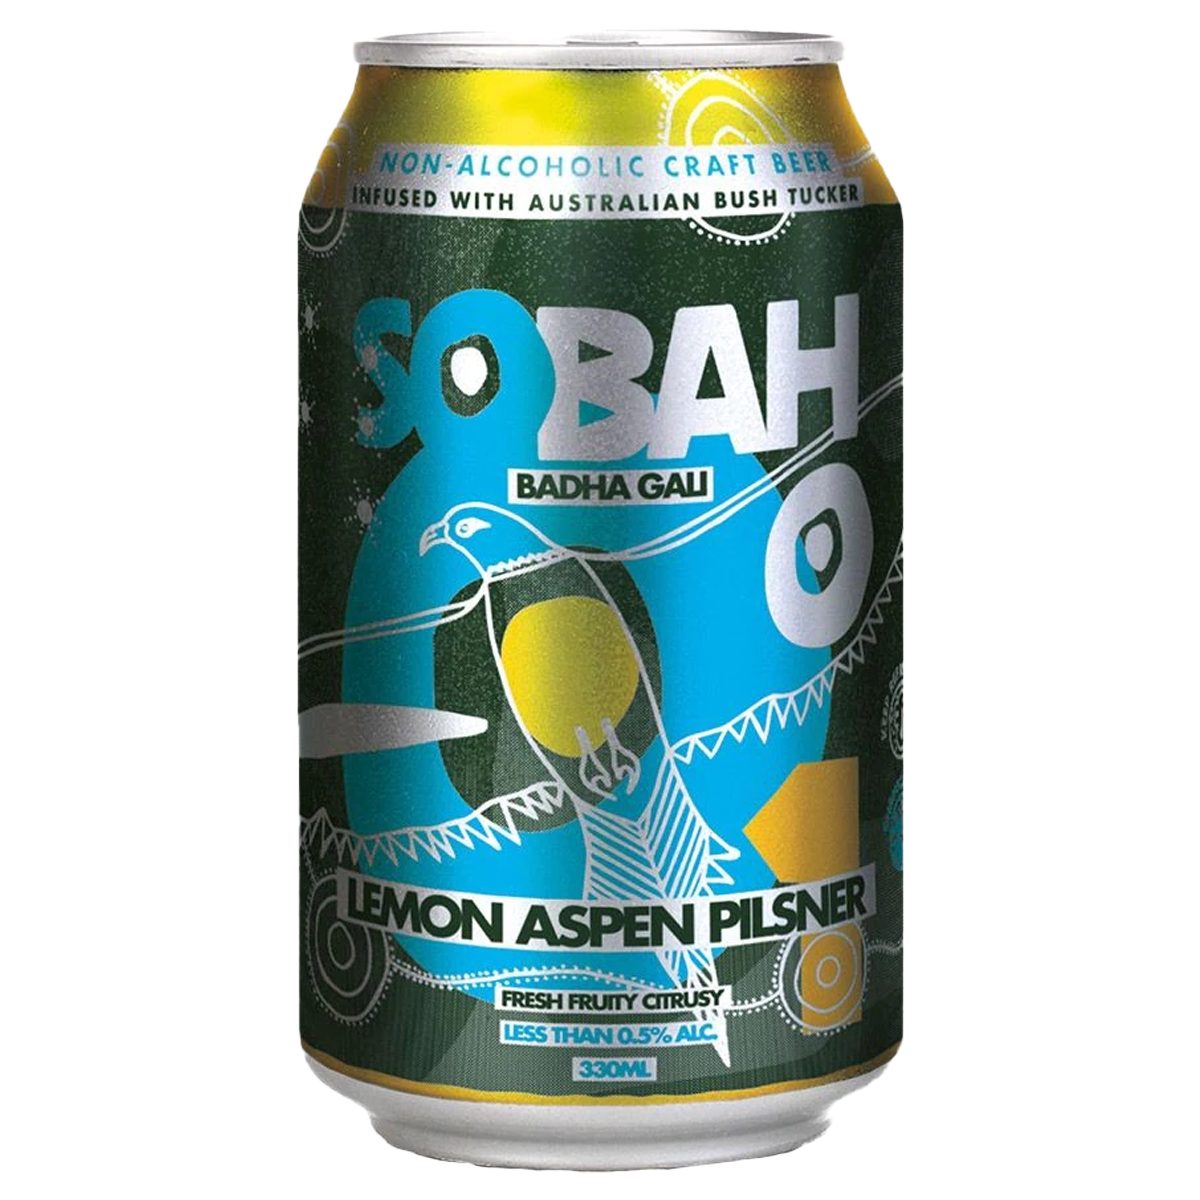 Lemon Aspen Pilsner - Sobah #1